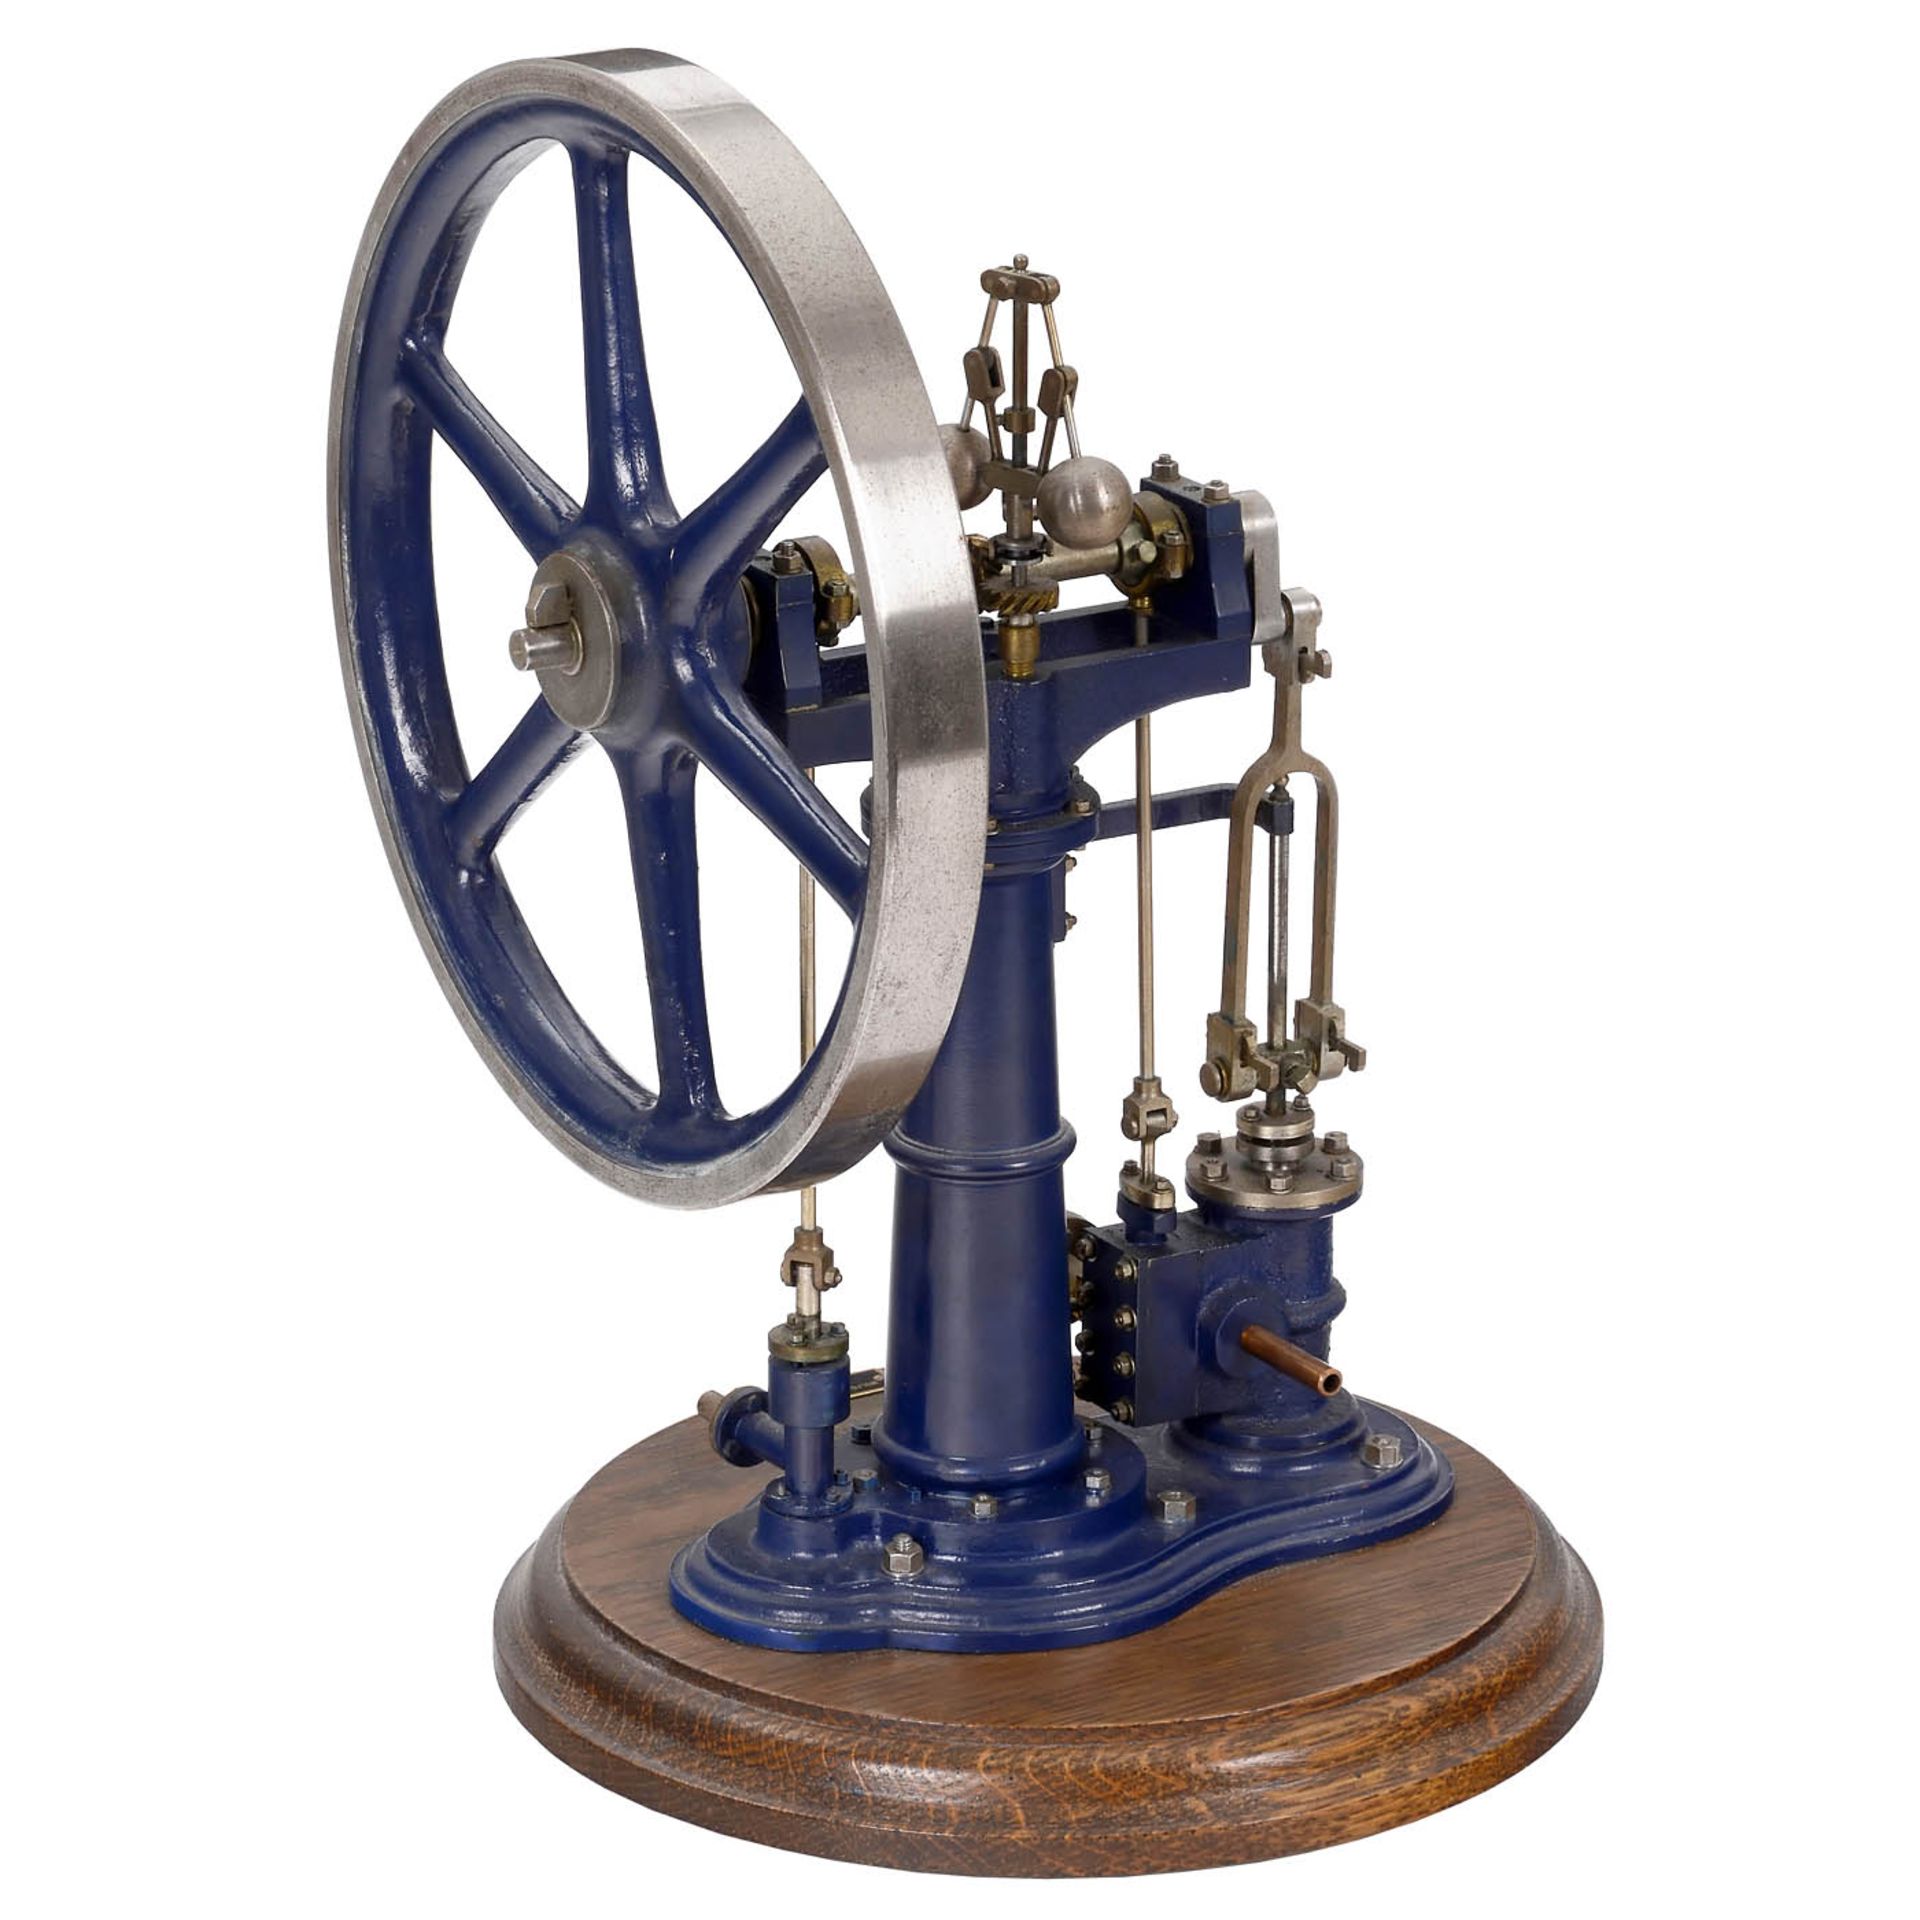 1-Inch Scale Working Model of the Benson Vertical Column Steam Engine - Bild 2 aus 2